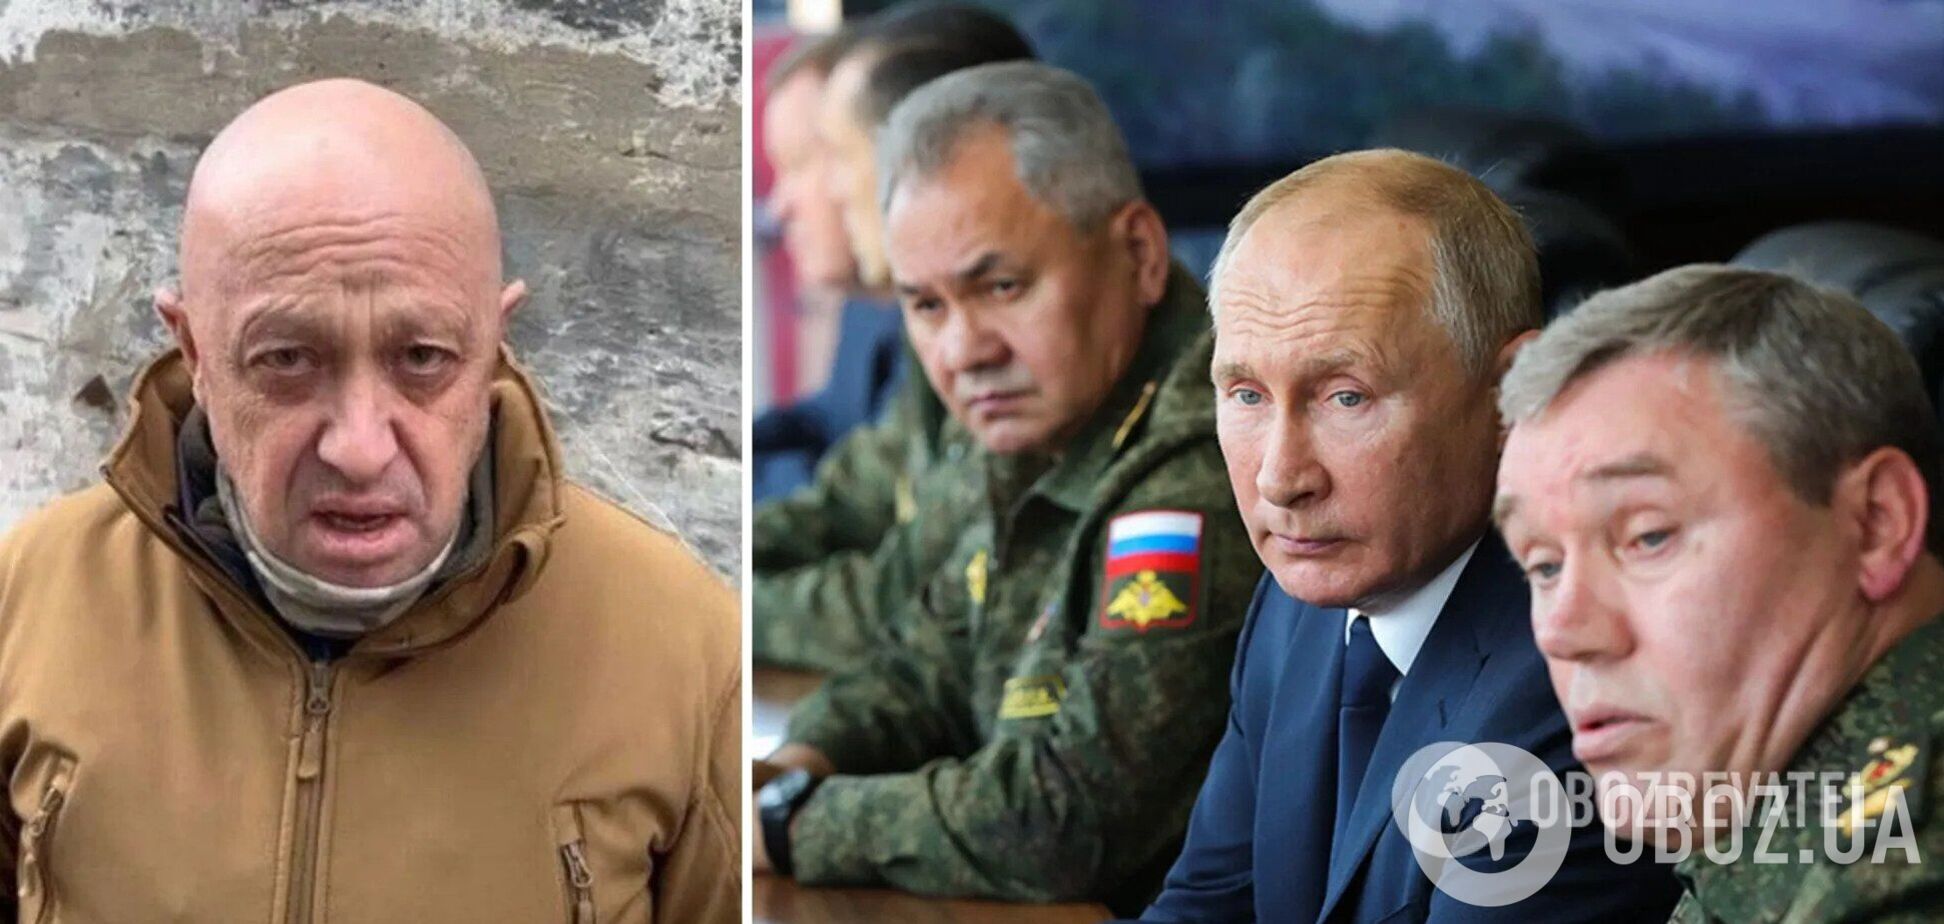 Пригожин заявил, что ВСУ не бомбили Донбасс восемь лет, и разнес Шойгу за ложь. Видео